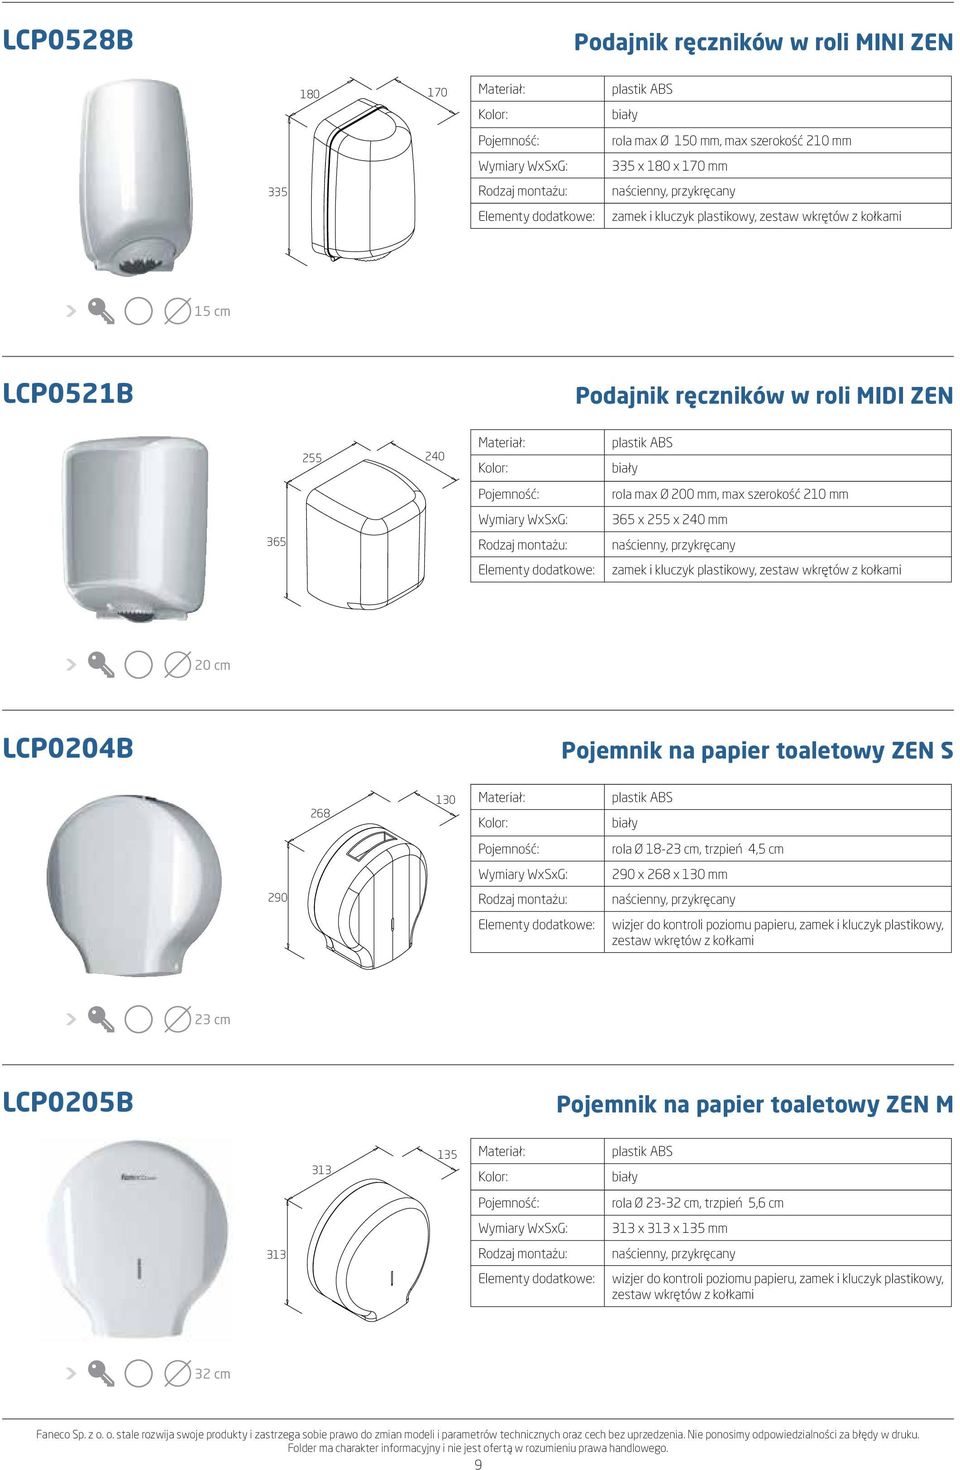 LCP0204B Pojemnik na papier toaletowy ZEN S 268 130 plastik ABS biały rola Ø 18-23 cm, trzpień 4,5 cm 290 x 268 x 130 mm 290 wizjer do kontroli poziomu papieru, zamek i kluczyk plastikowy, zestaw